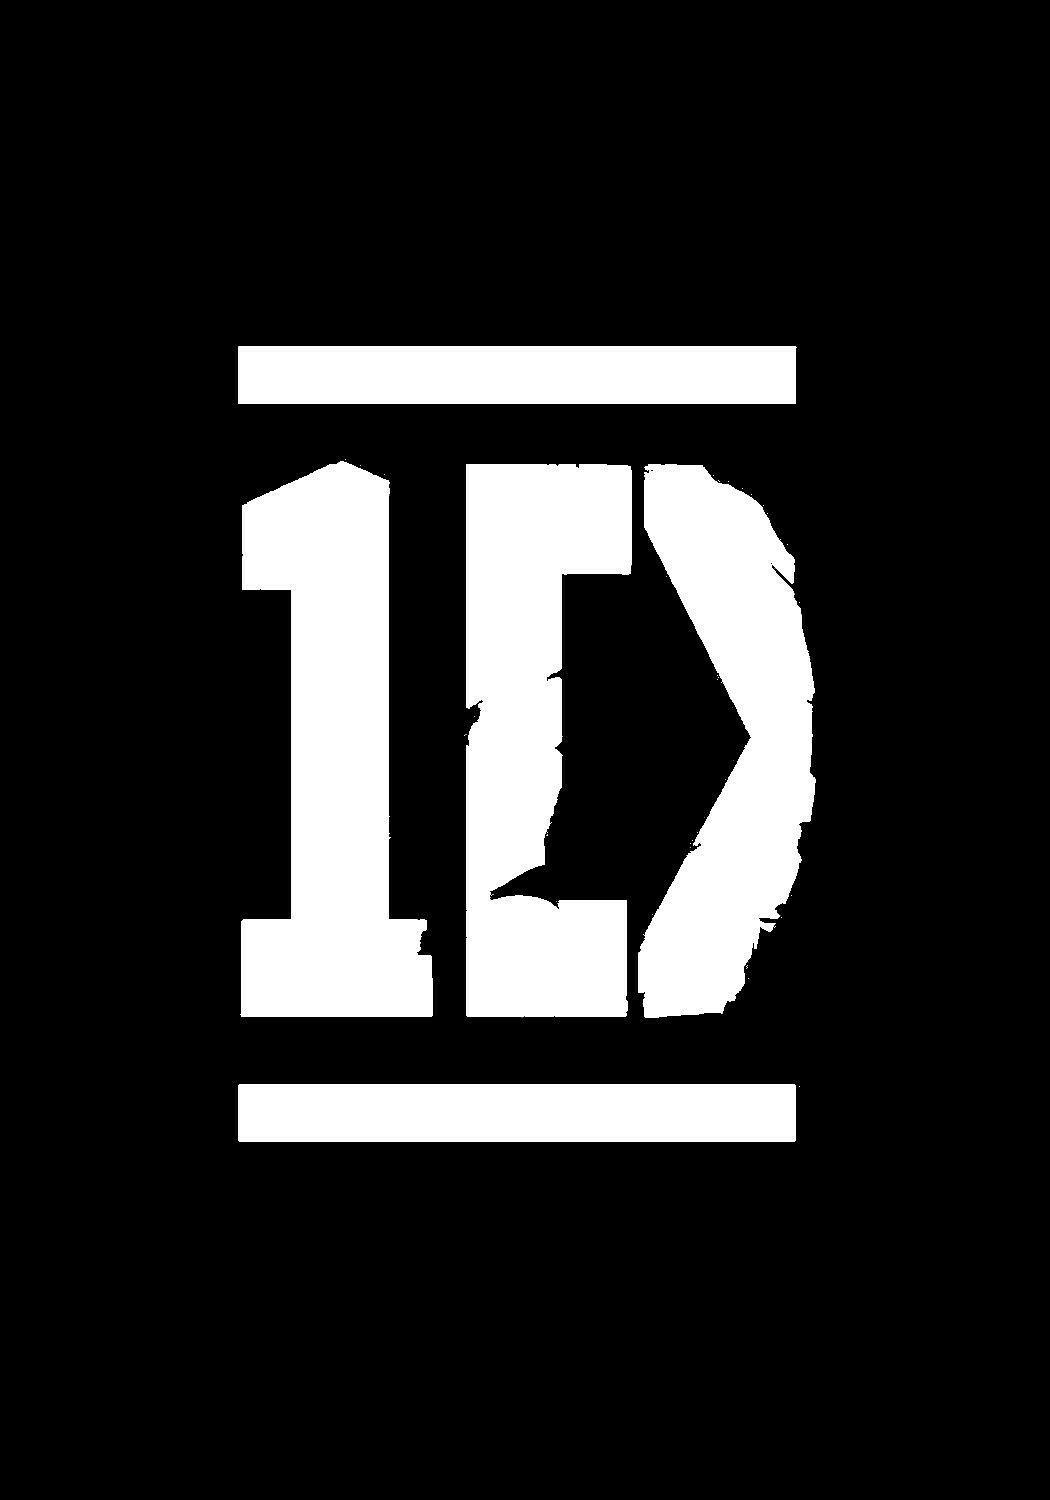 I Love One Direction Logo - ONE DIRECTION logo. ONE DIRECTION LOGO. One Direction, One